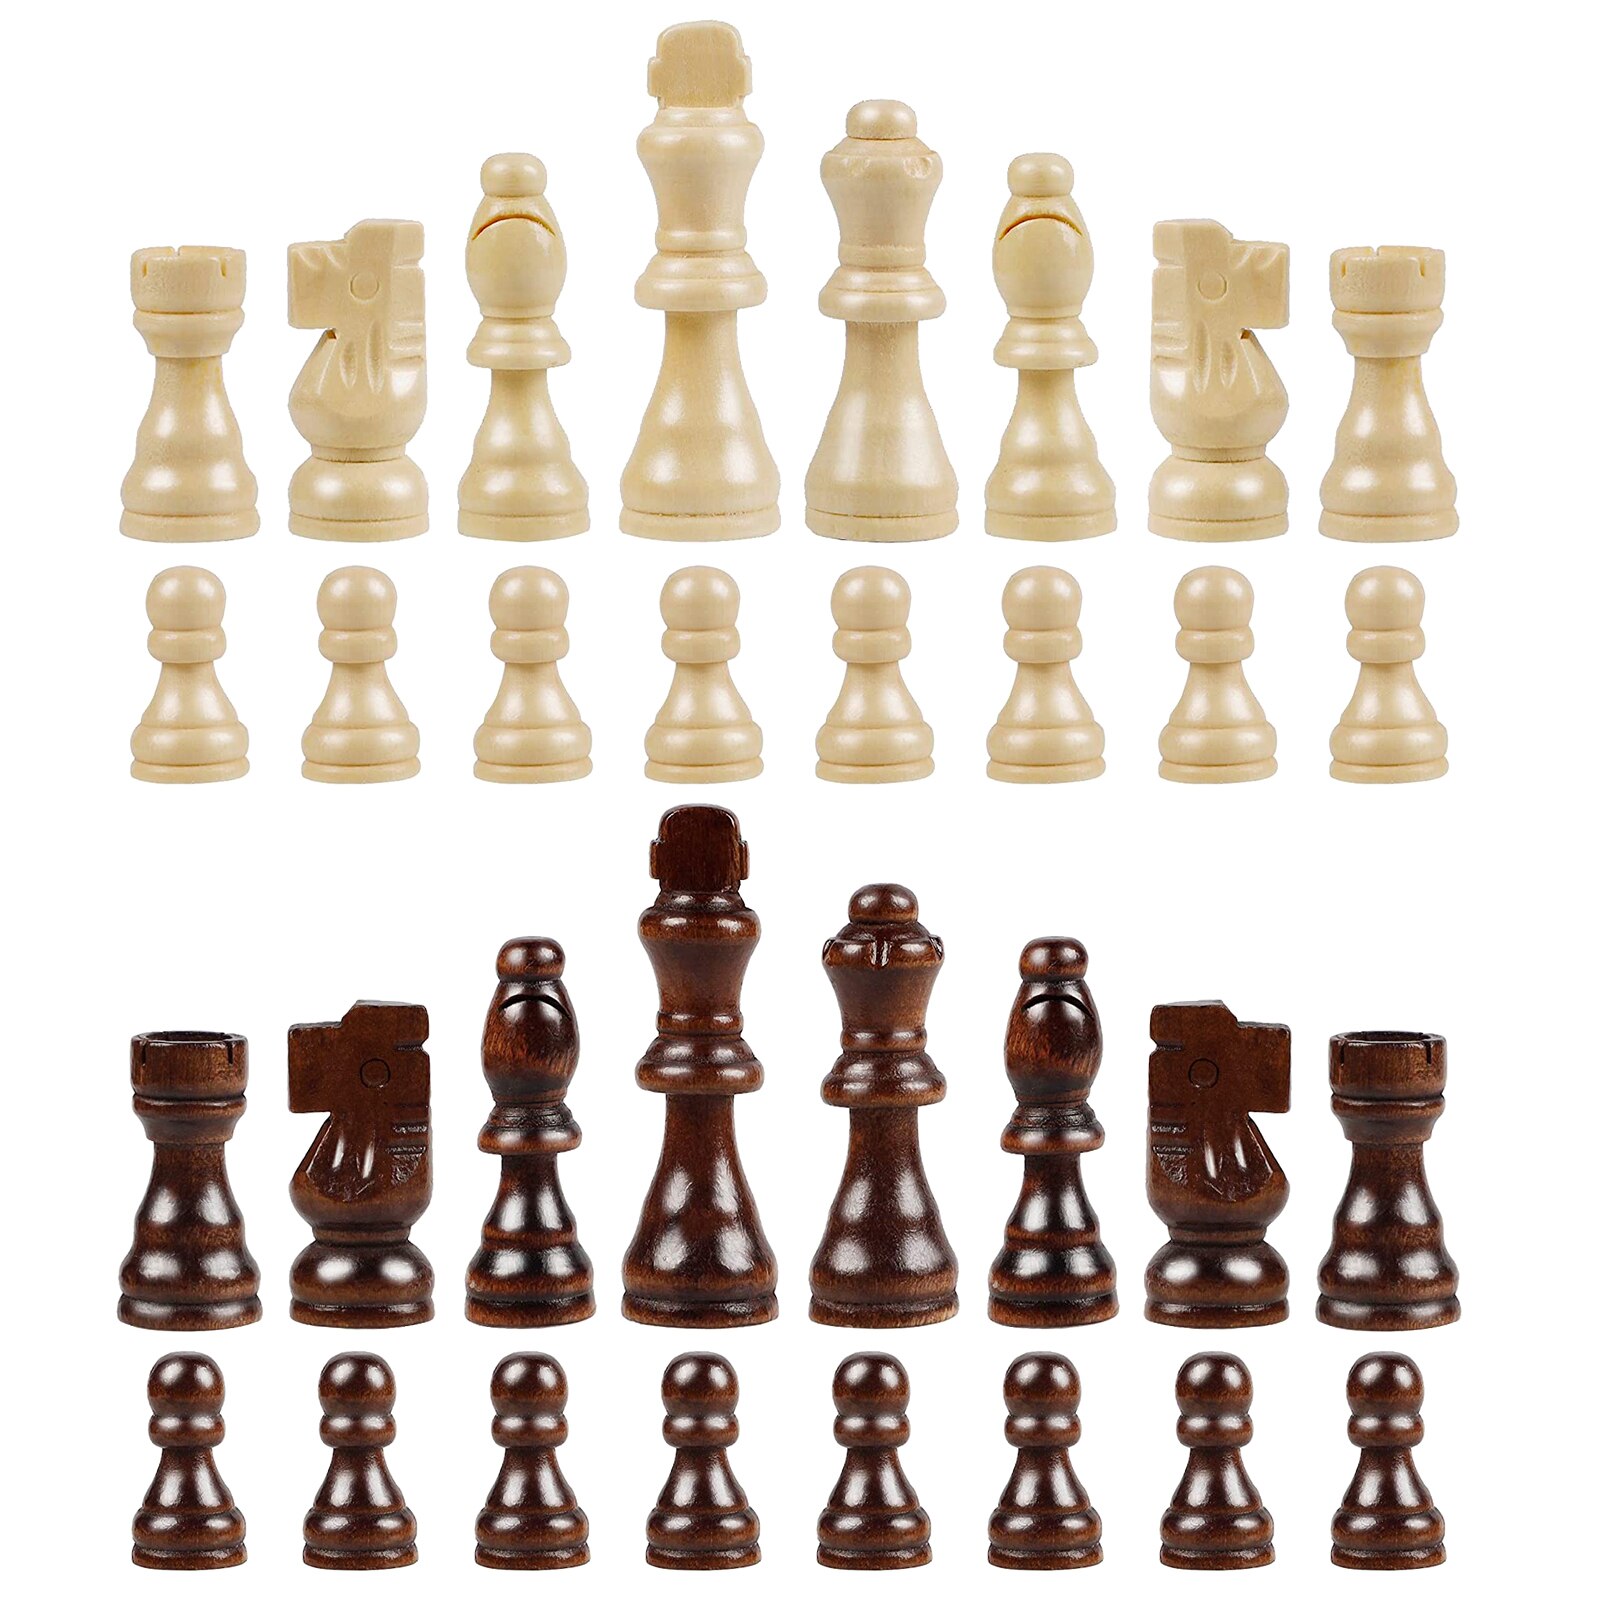 32 piezas de ajedrez Internacional, juego de ajedrez de madera, reemplazo de juegos de entretenimiento: Default Title